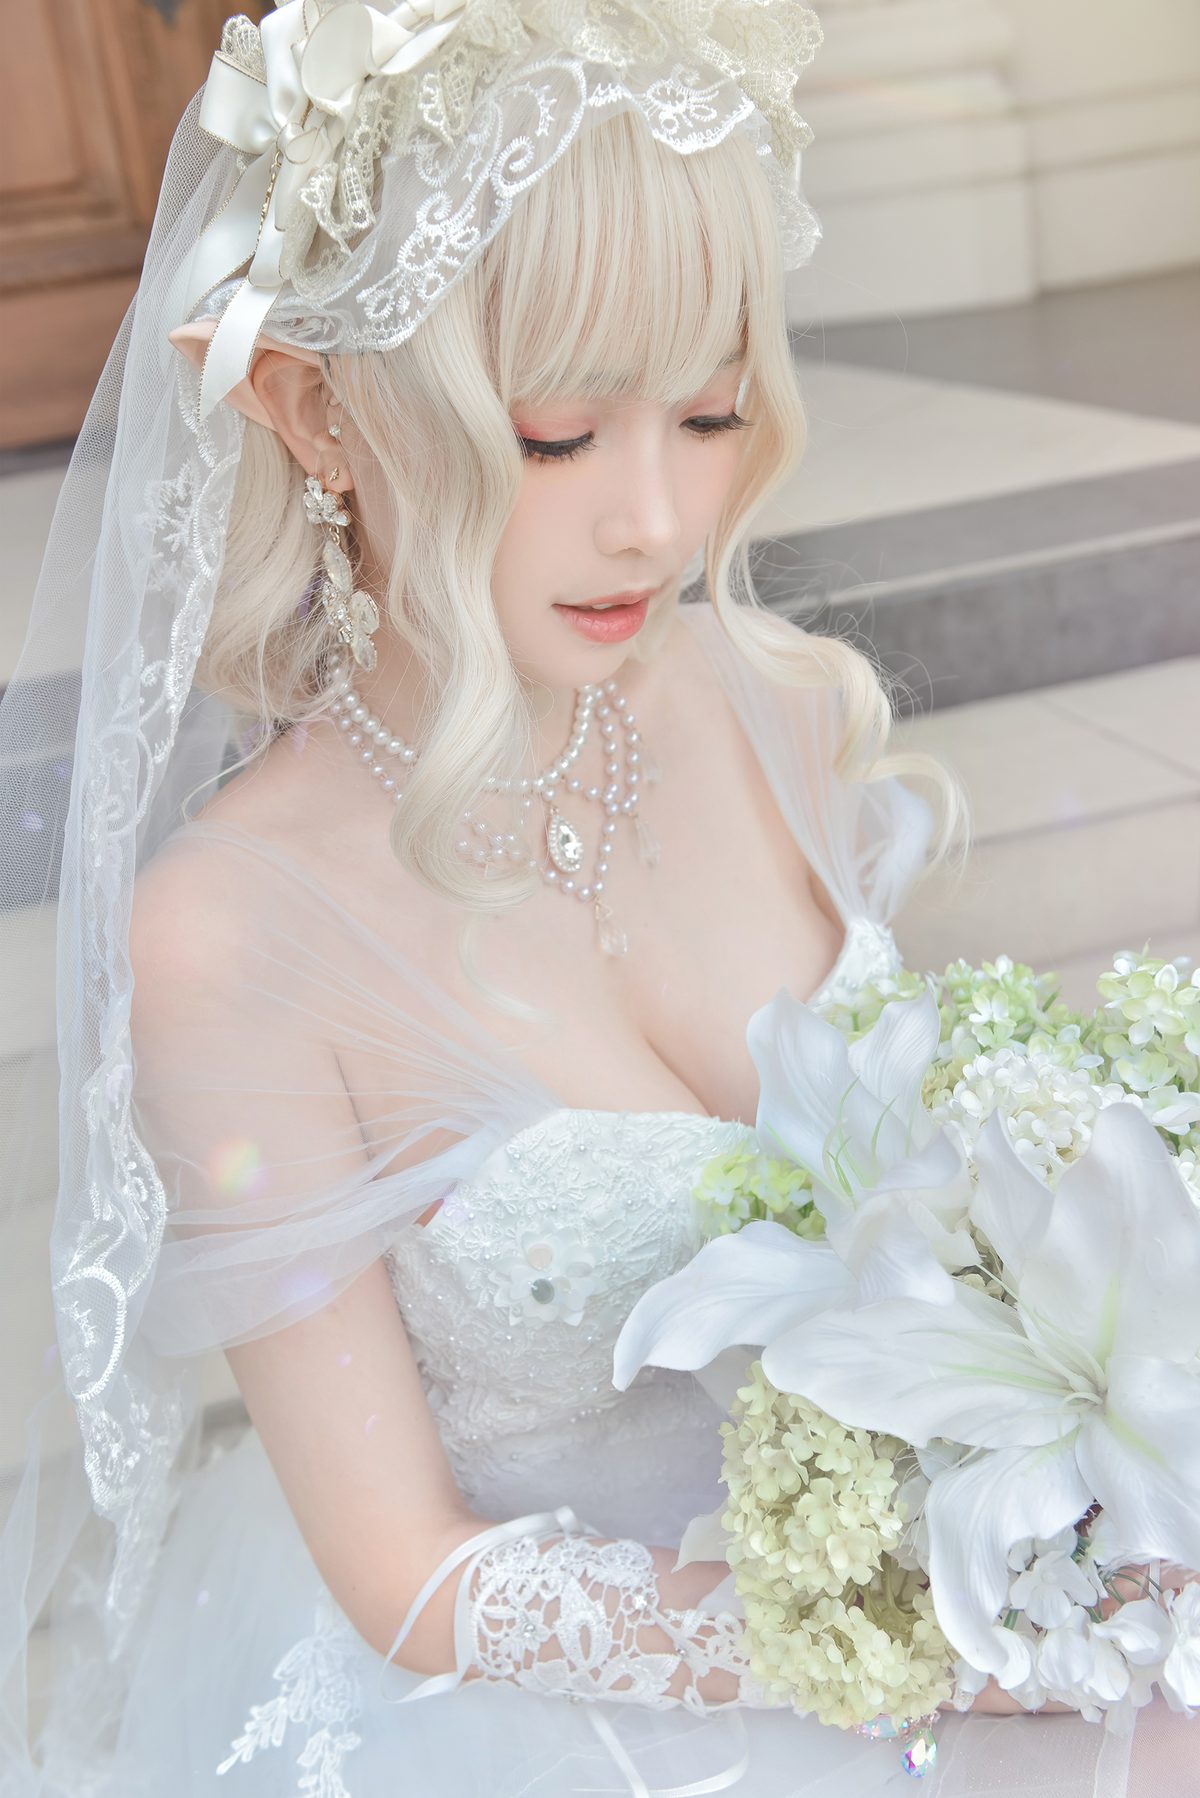 Coser@Ely_eee ElyEE子 Bride And Lingerie 0052 8893238310.jpg